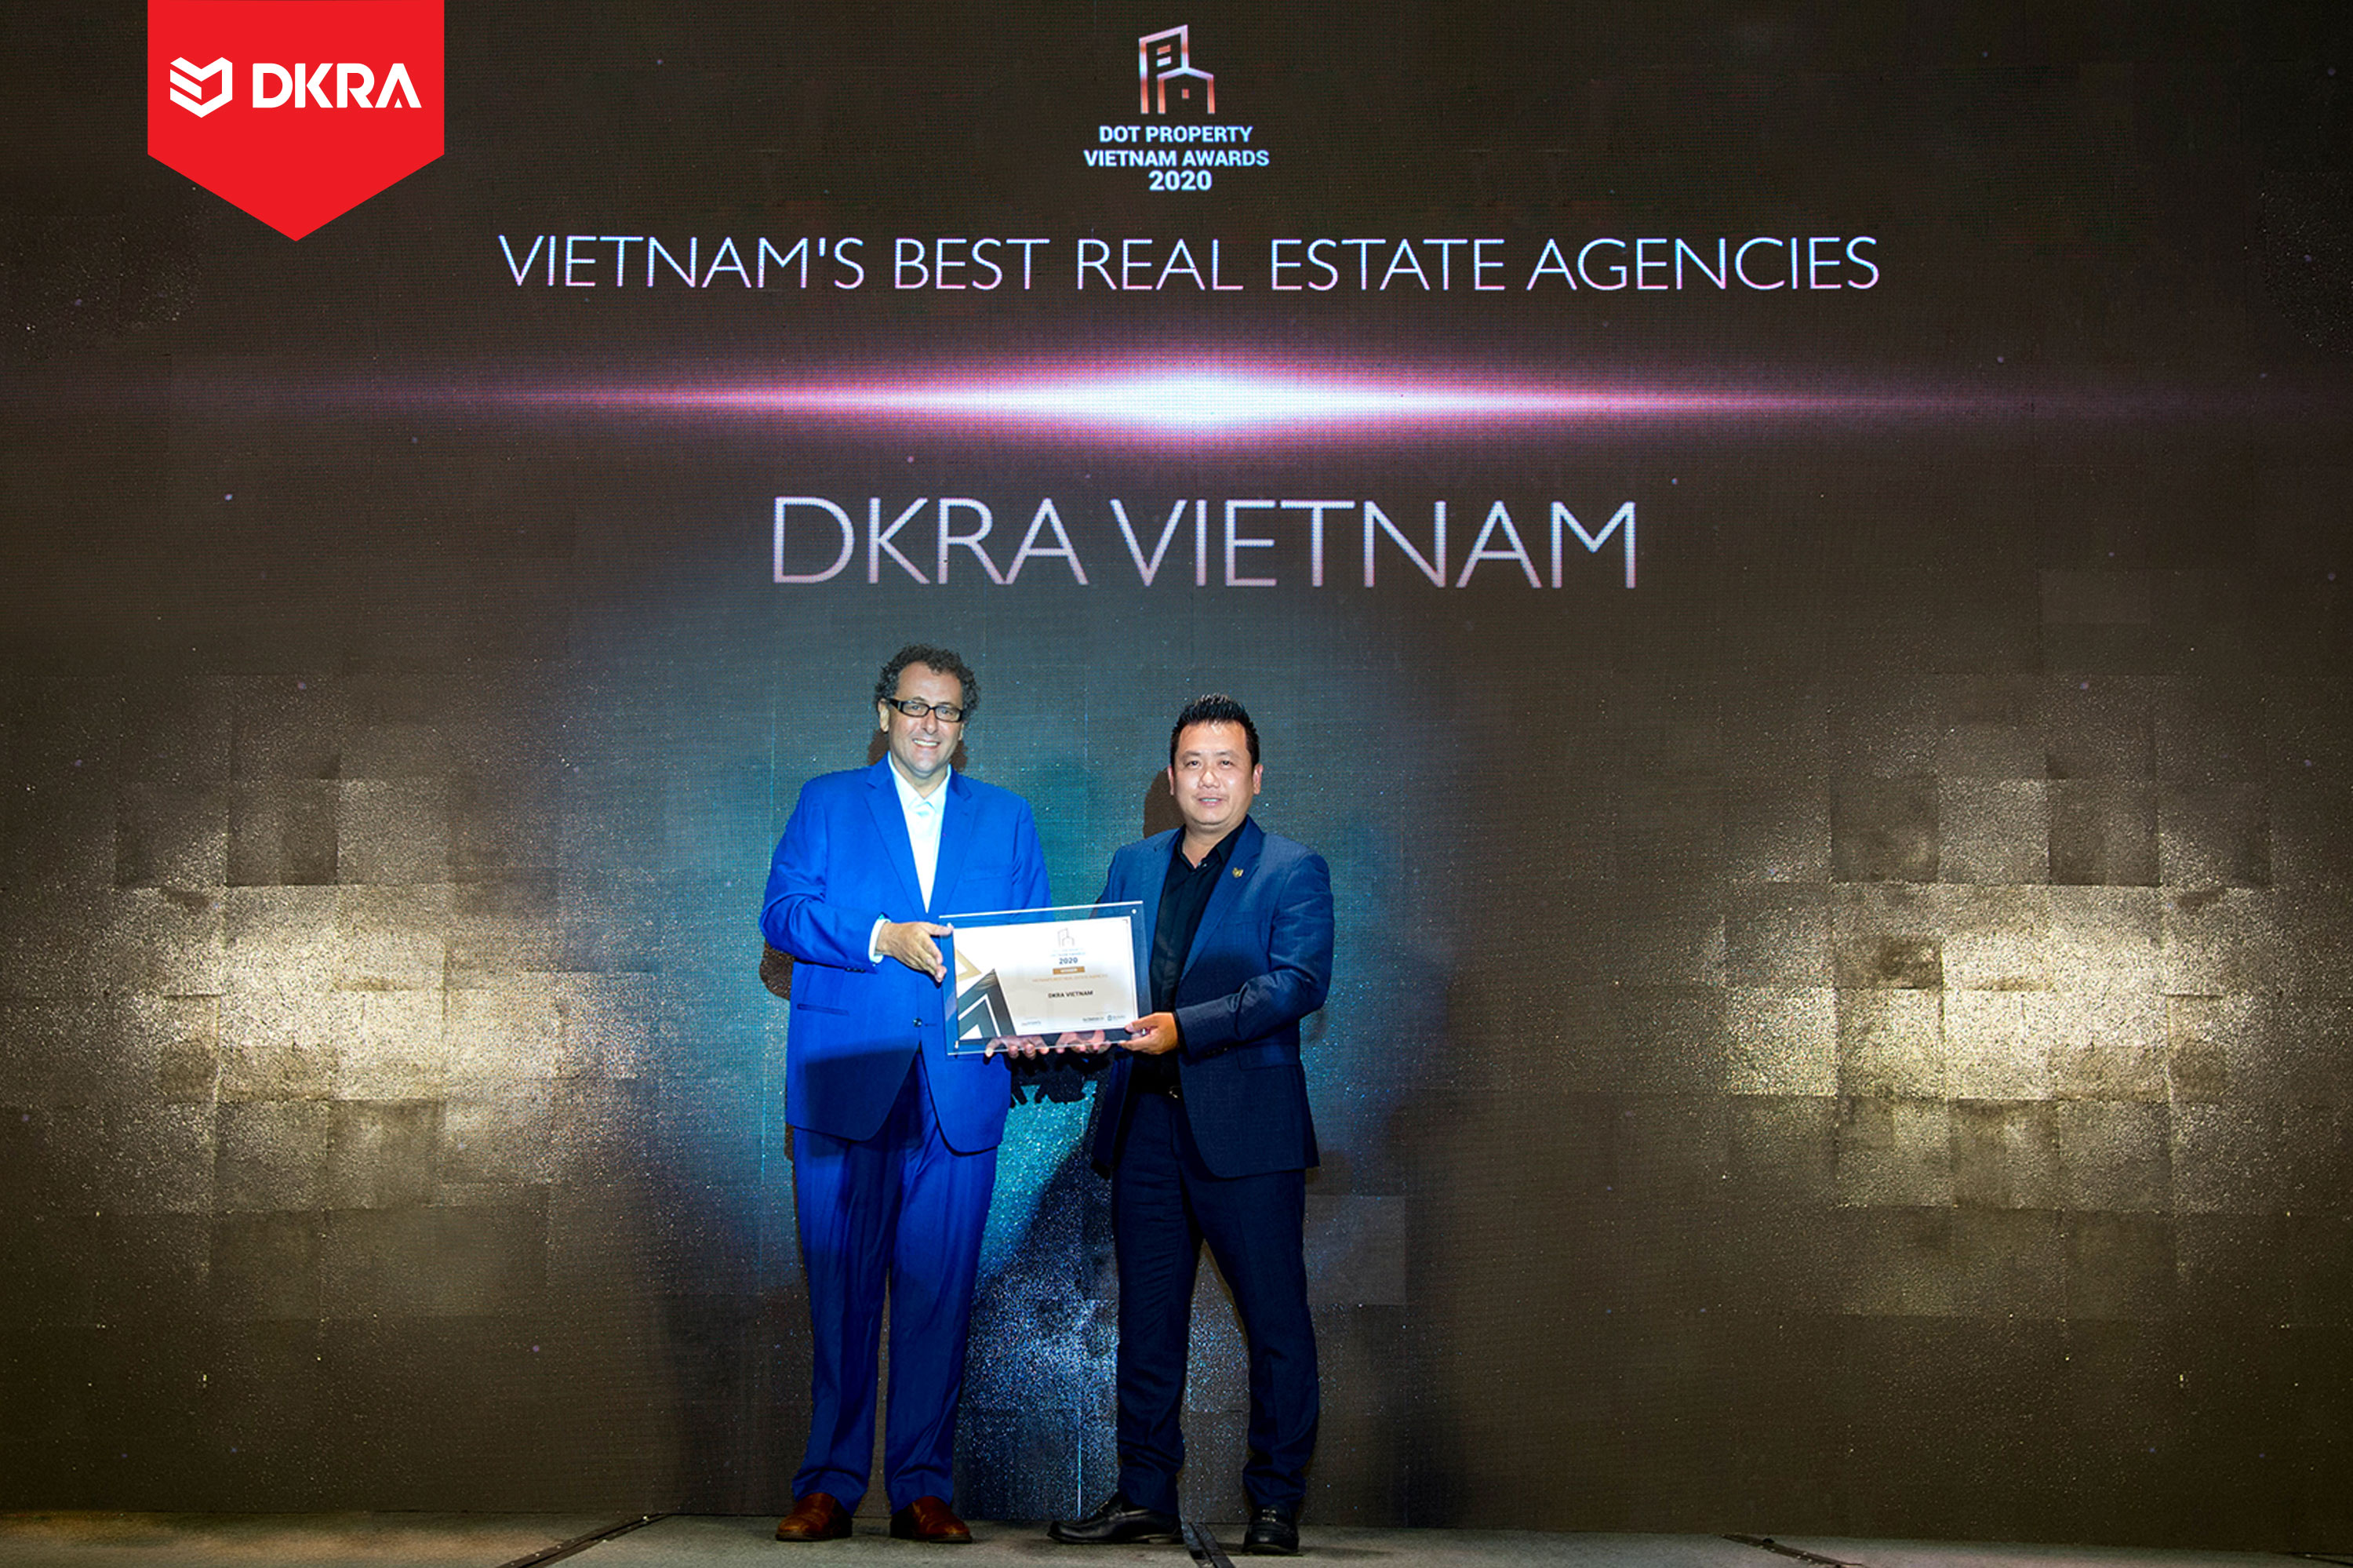 DKRA Vietnam “Đơn vị phân phối bất động sản tốt nhất Đông Nam Á” do Dot Property Vietnam Awards trao tặng 2019 và 2020